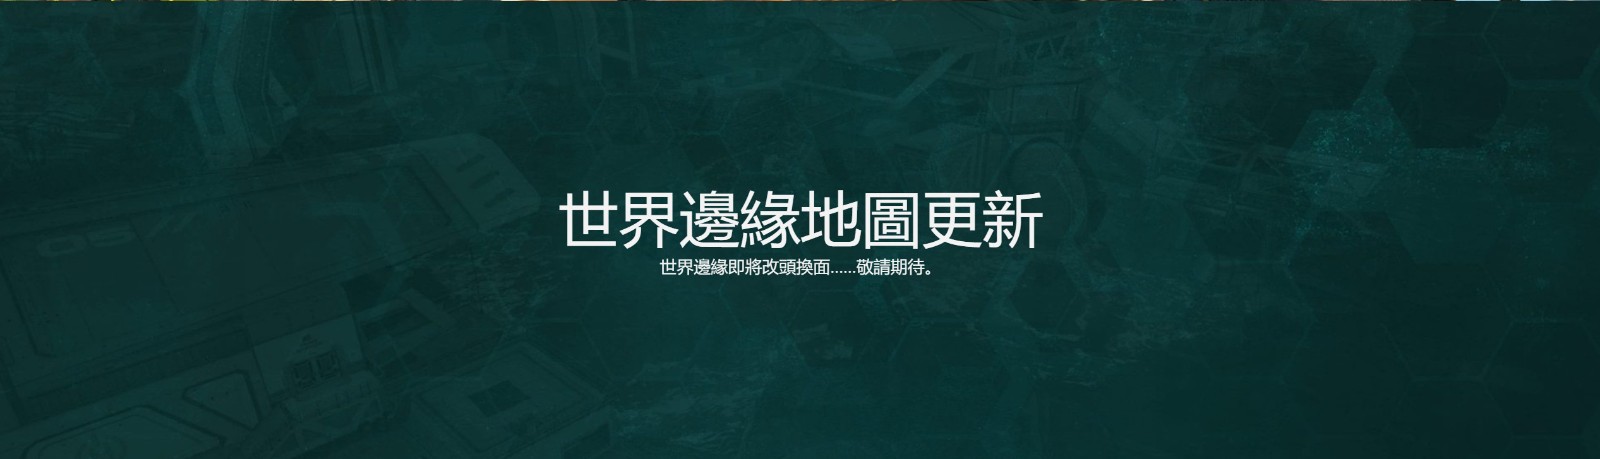 《Apex英雄》第十賽季外域故事“變形記”中文預告 新英雄席爾登場